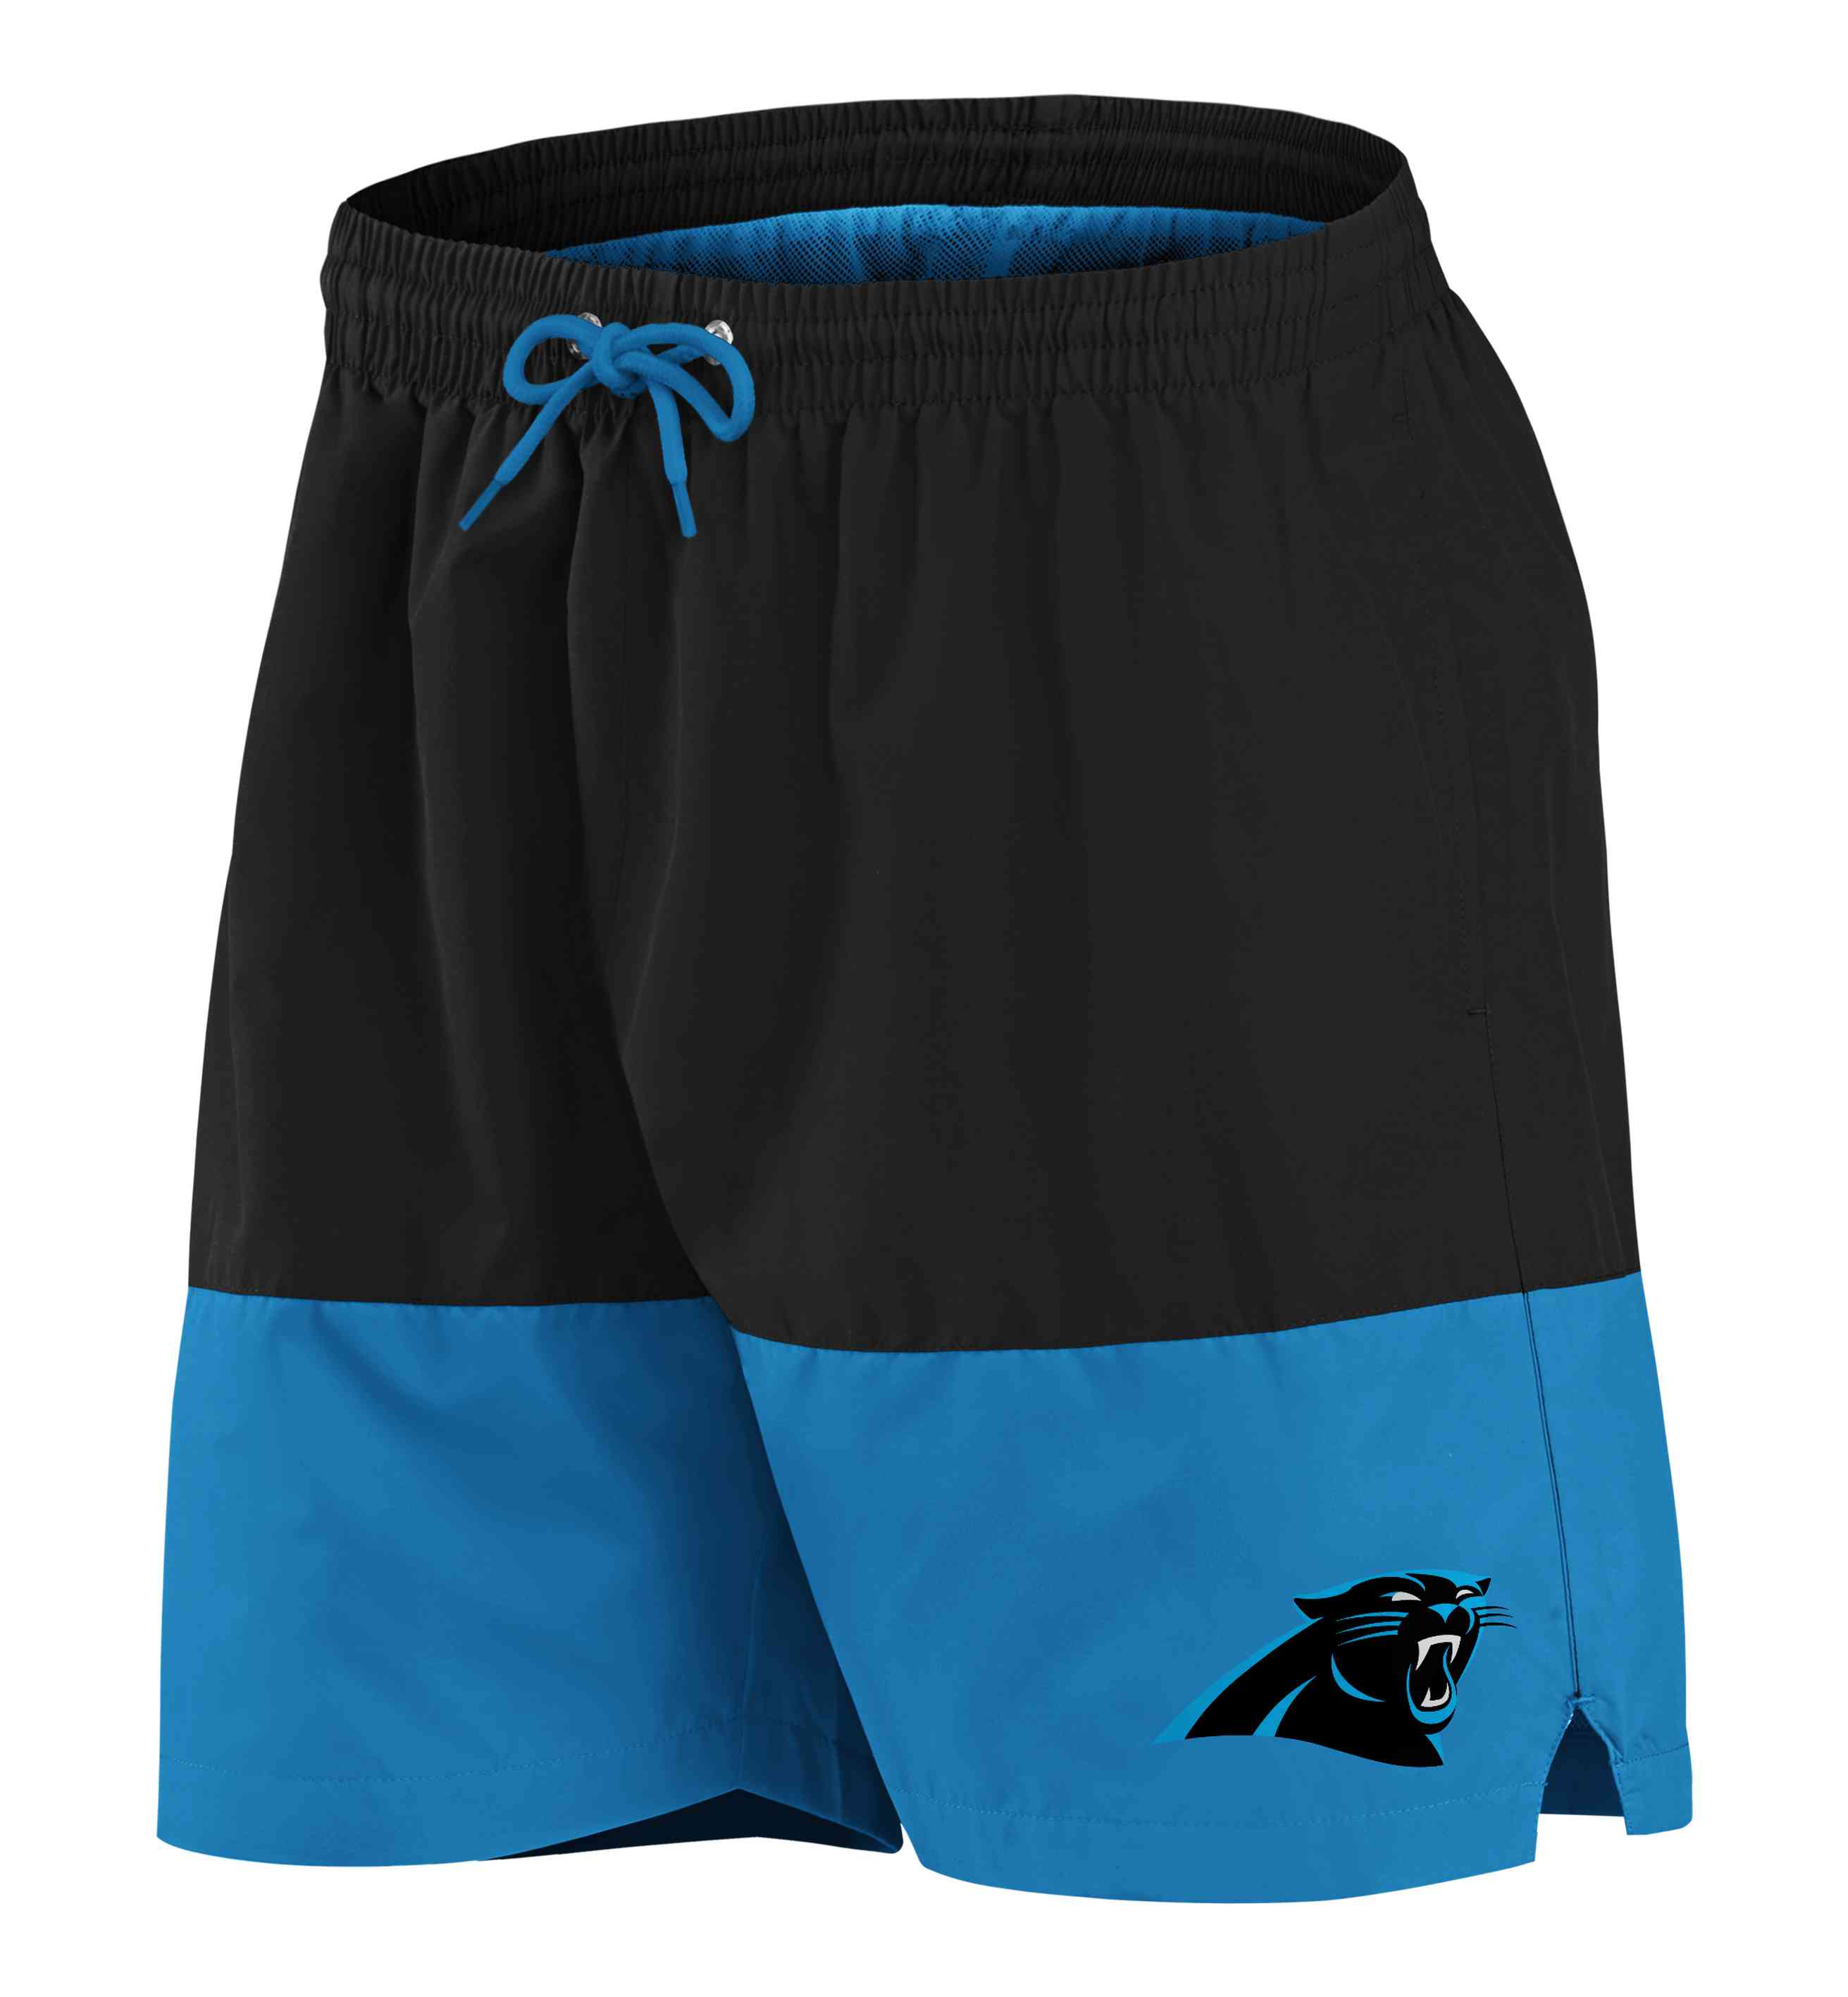 Fanatics - NFL Carolina Panthers Woven Shorts